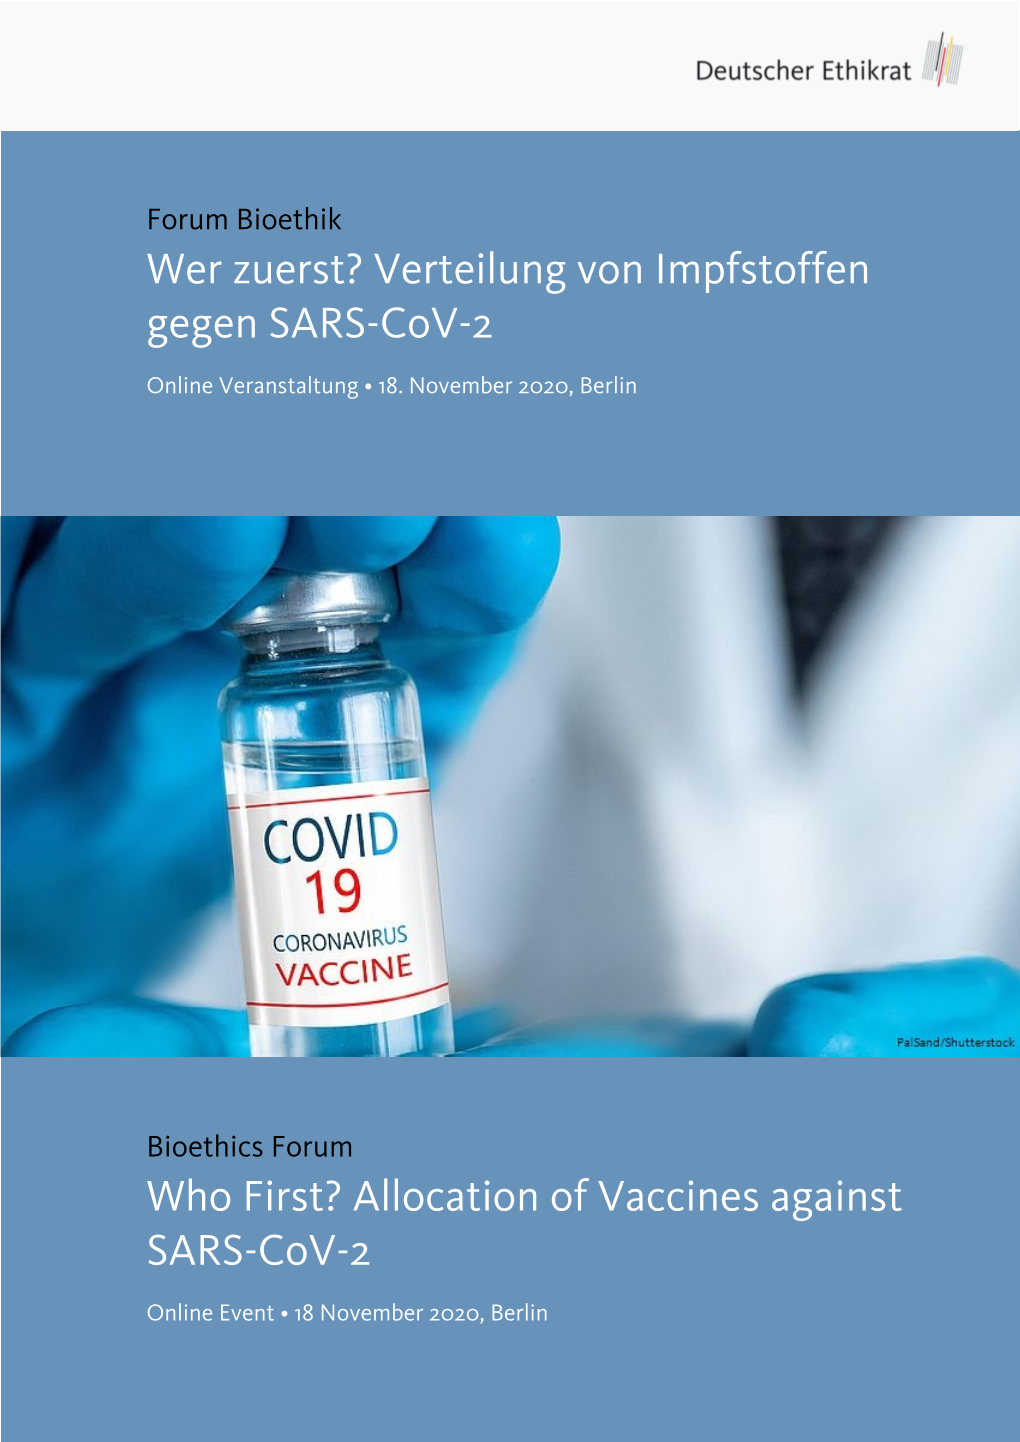 Allocation of Vaccines Against SARS-Cov-2